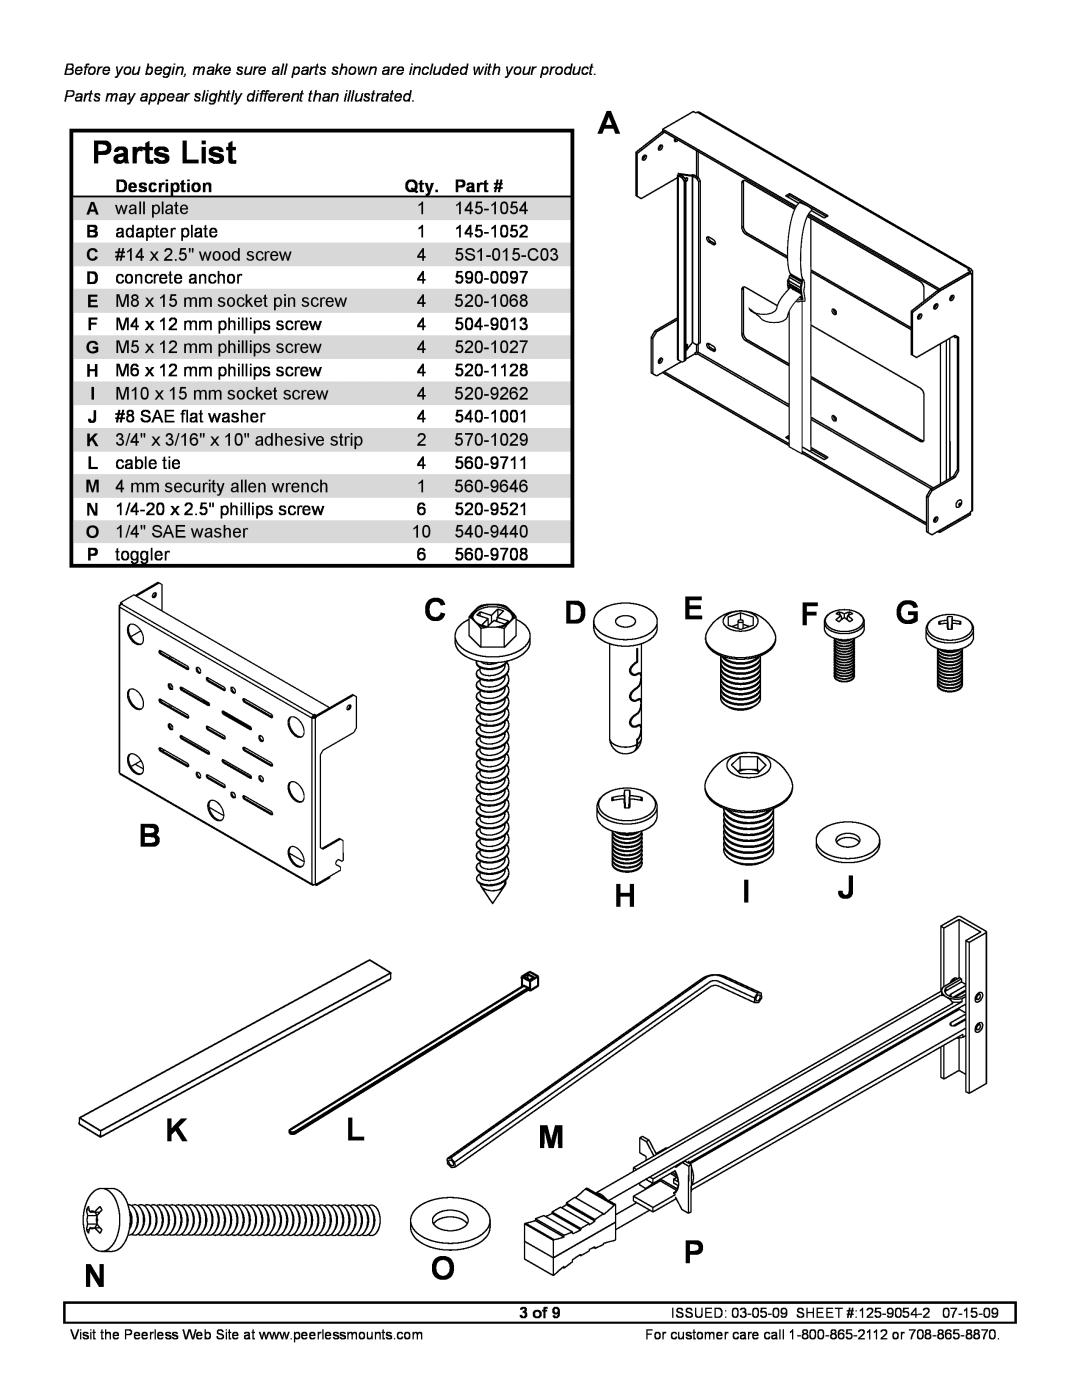 Peerless Industries DS508 manual Parts List, C D E F G B H I J K L M, Description 